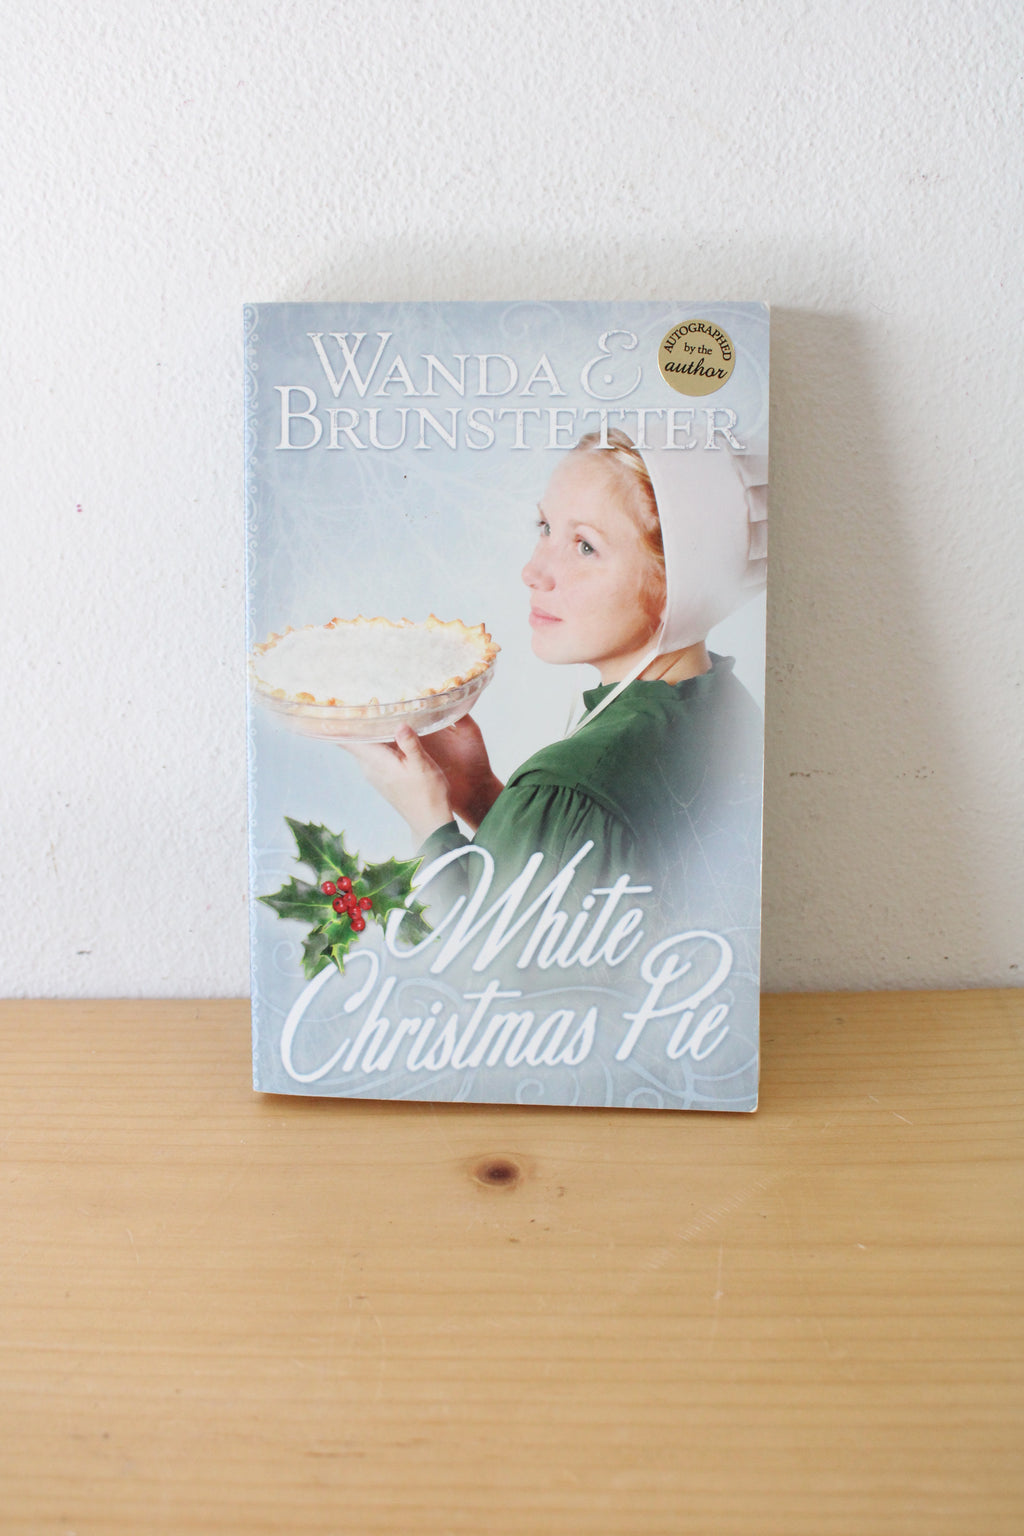 White Christmas Pie By Wanda E. Brunstetter